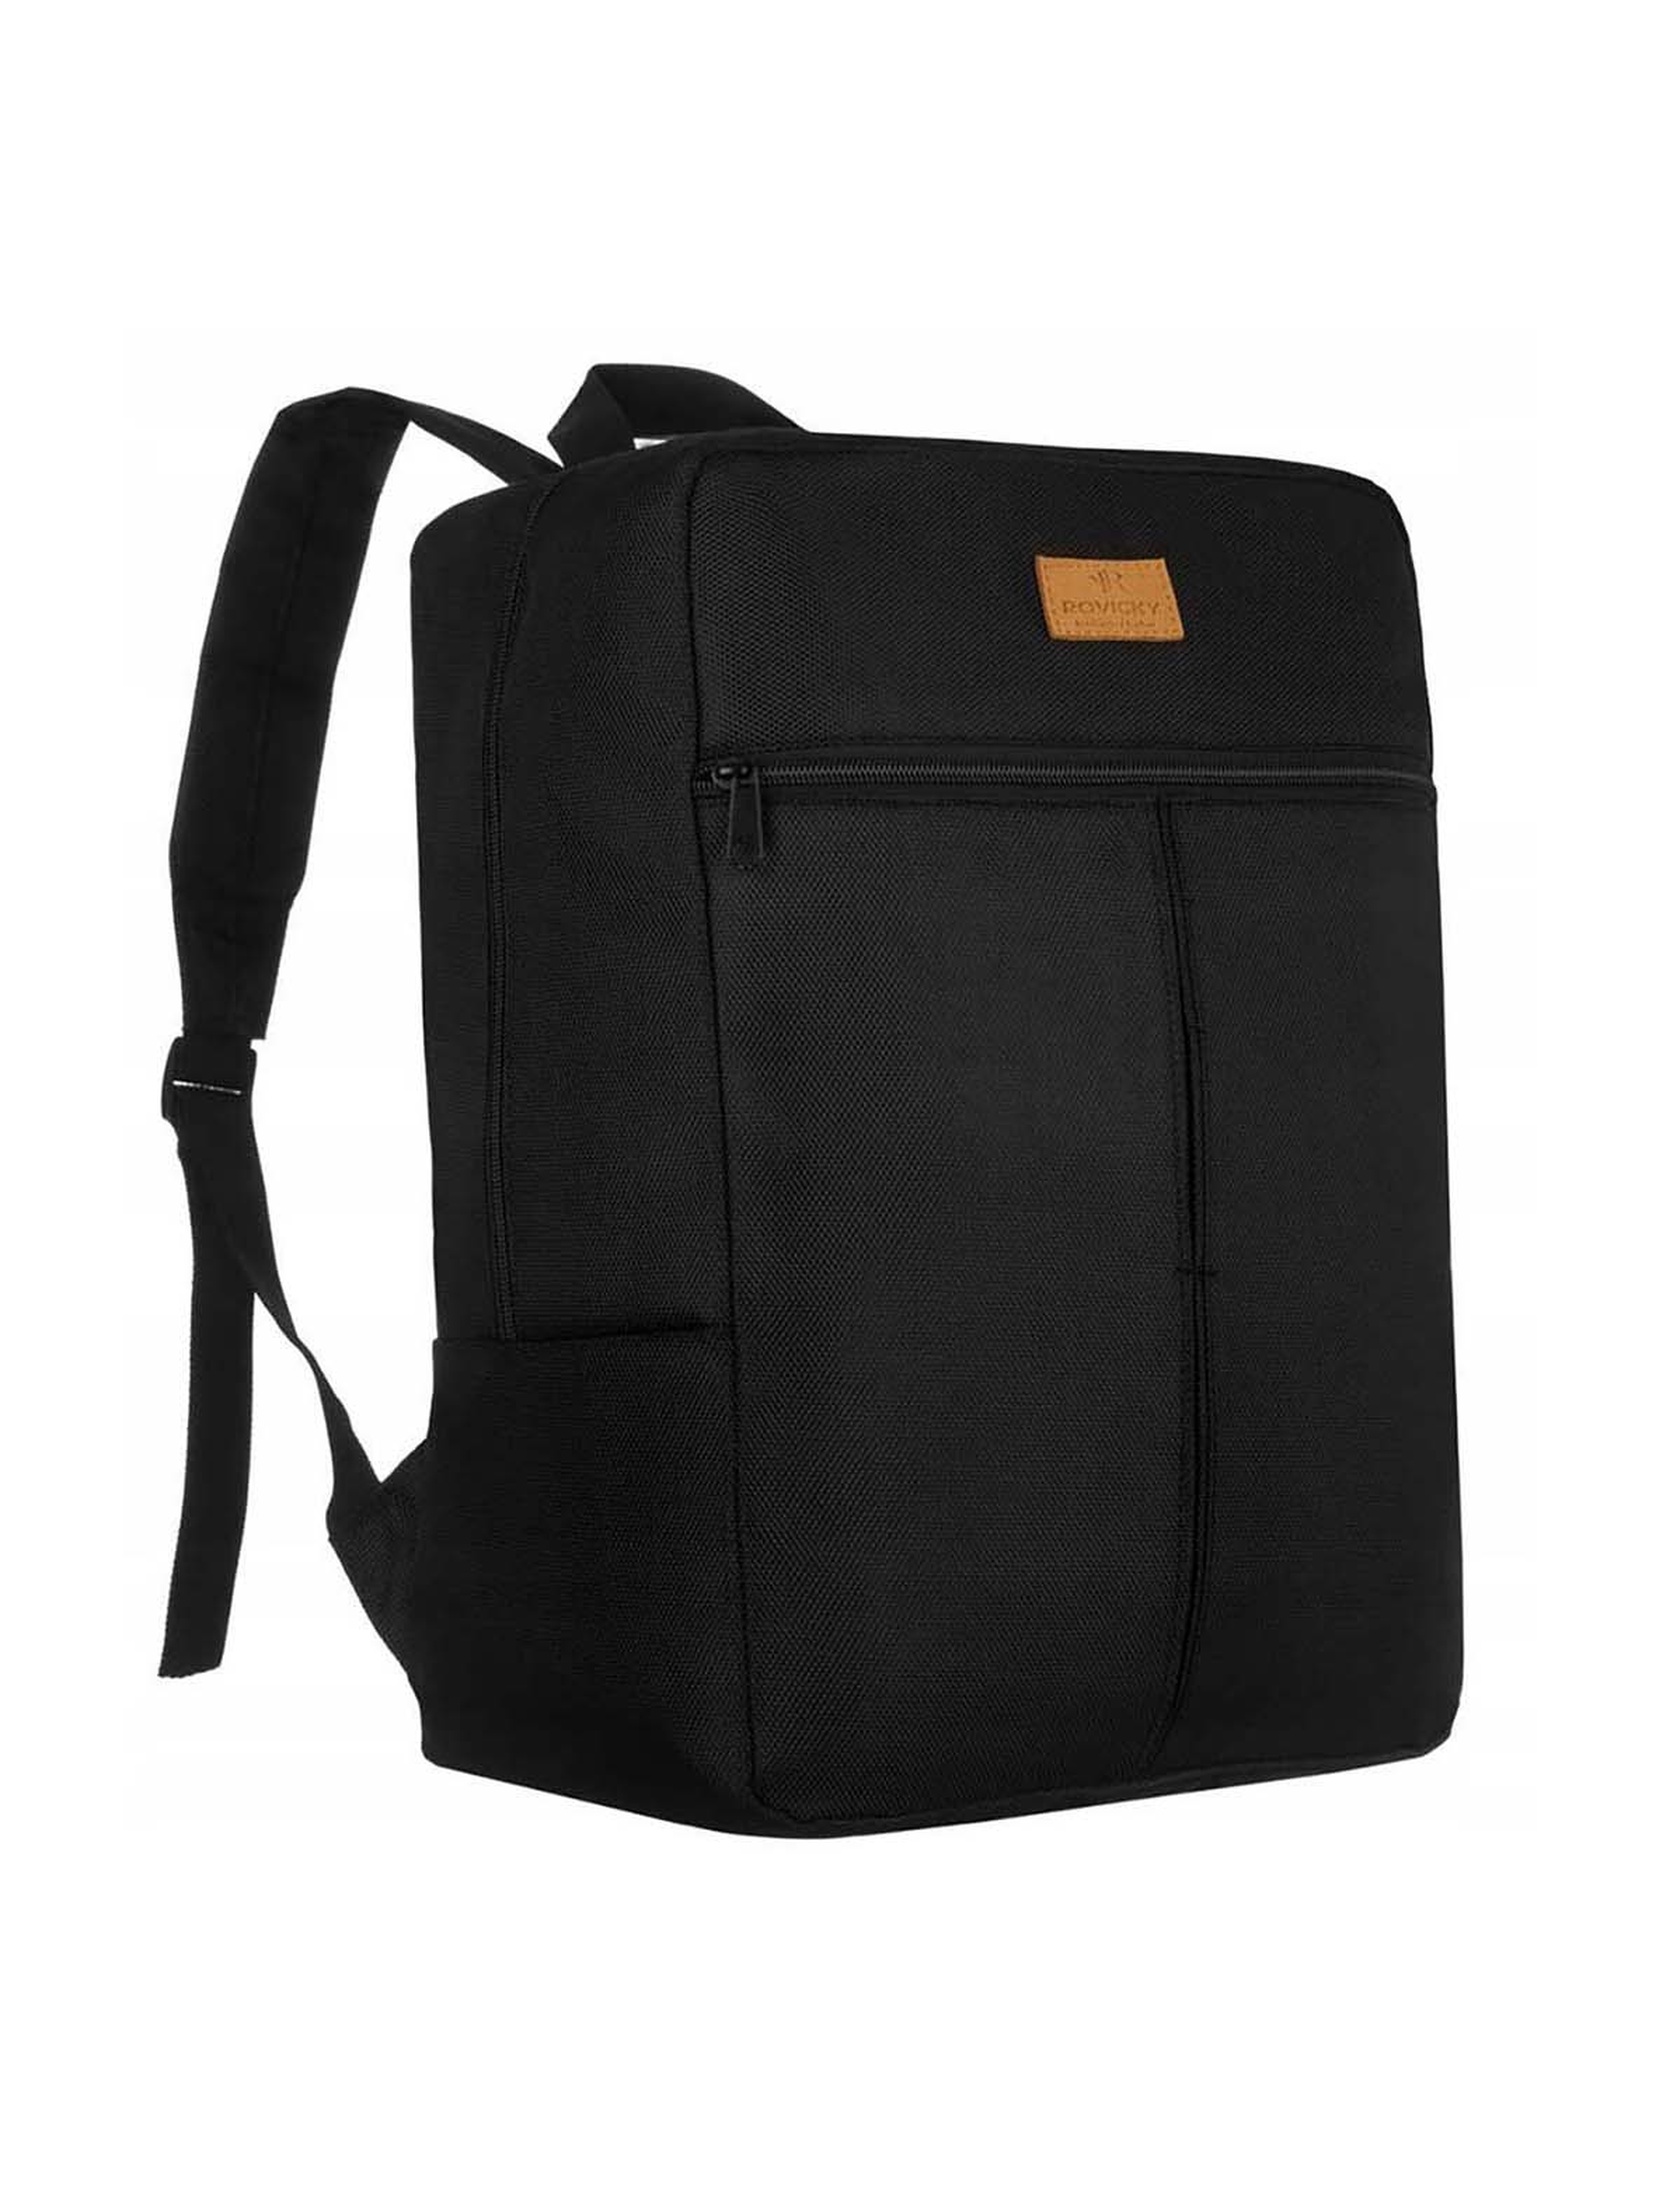 Duży, pojemny, podróżny plecak czarny z poliestru - Rovicky